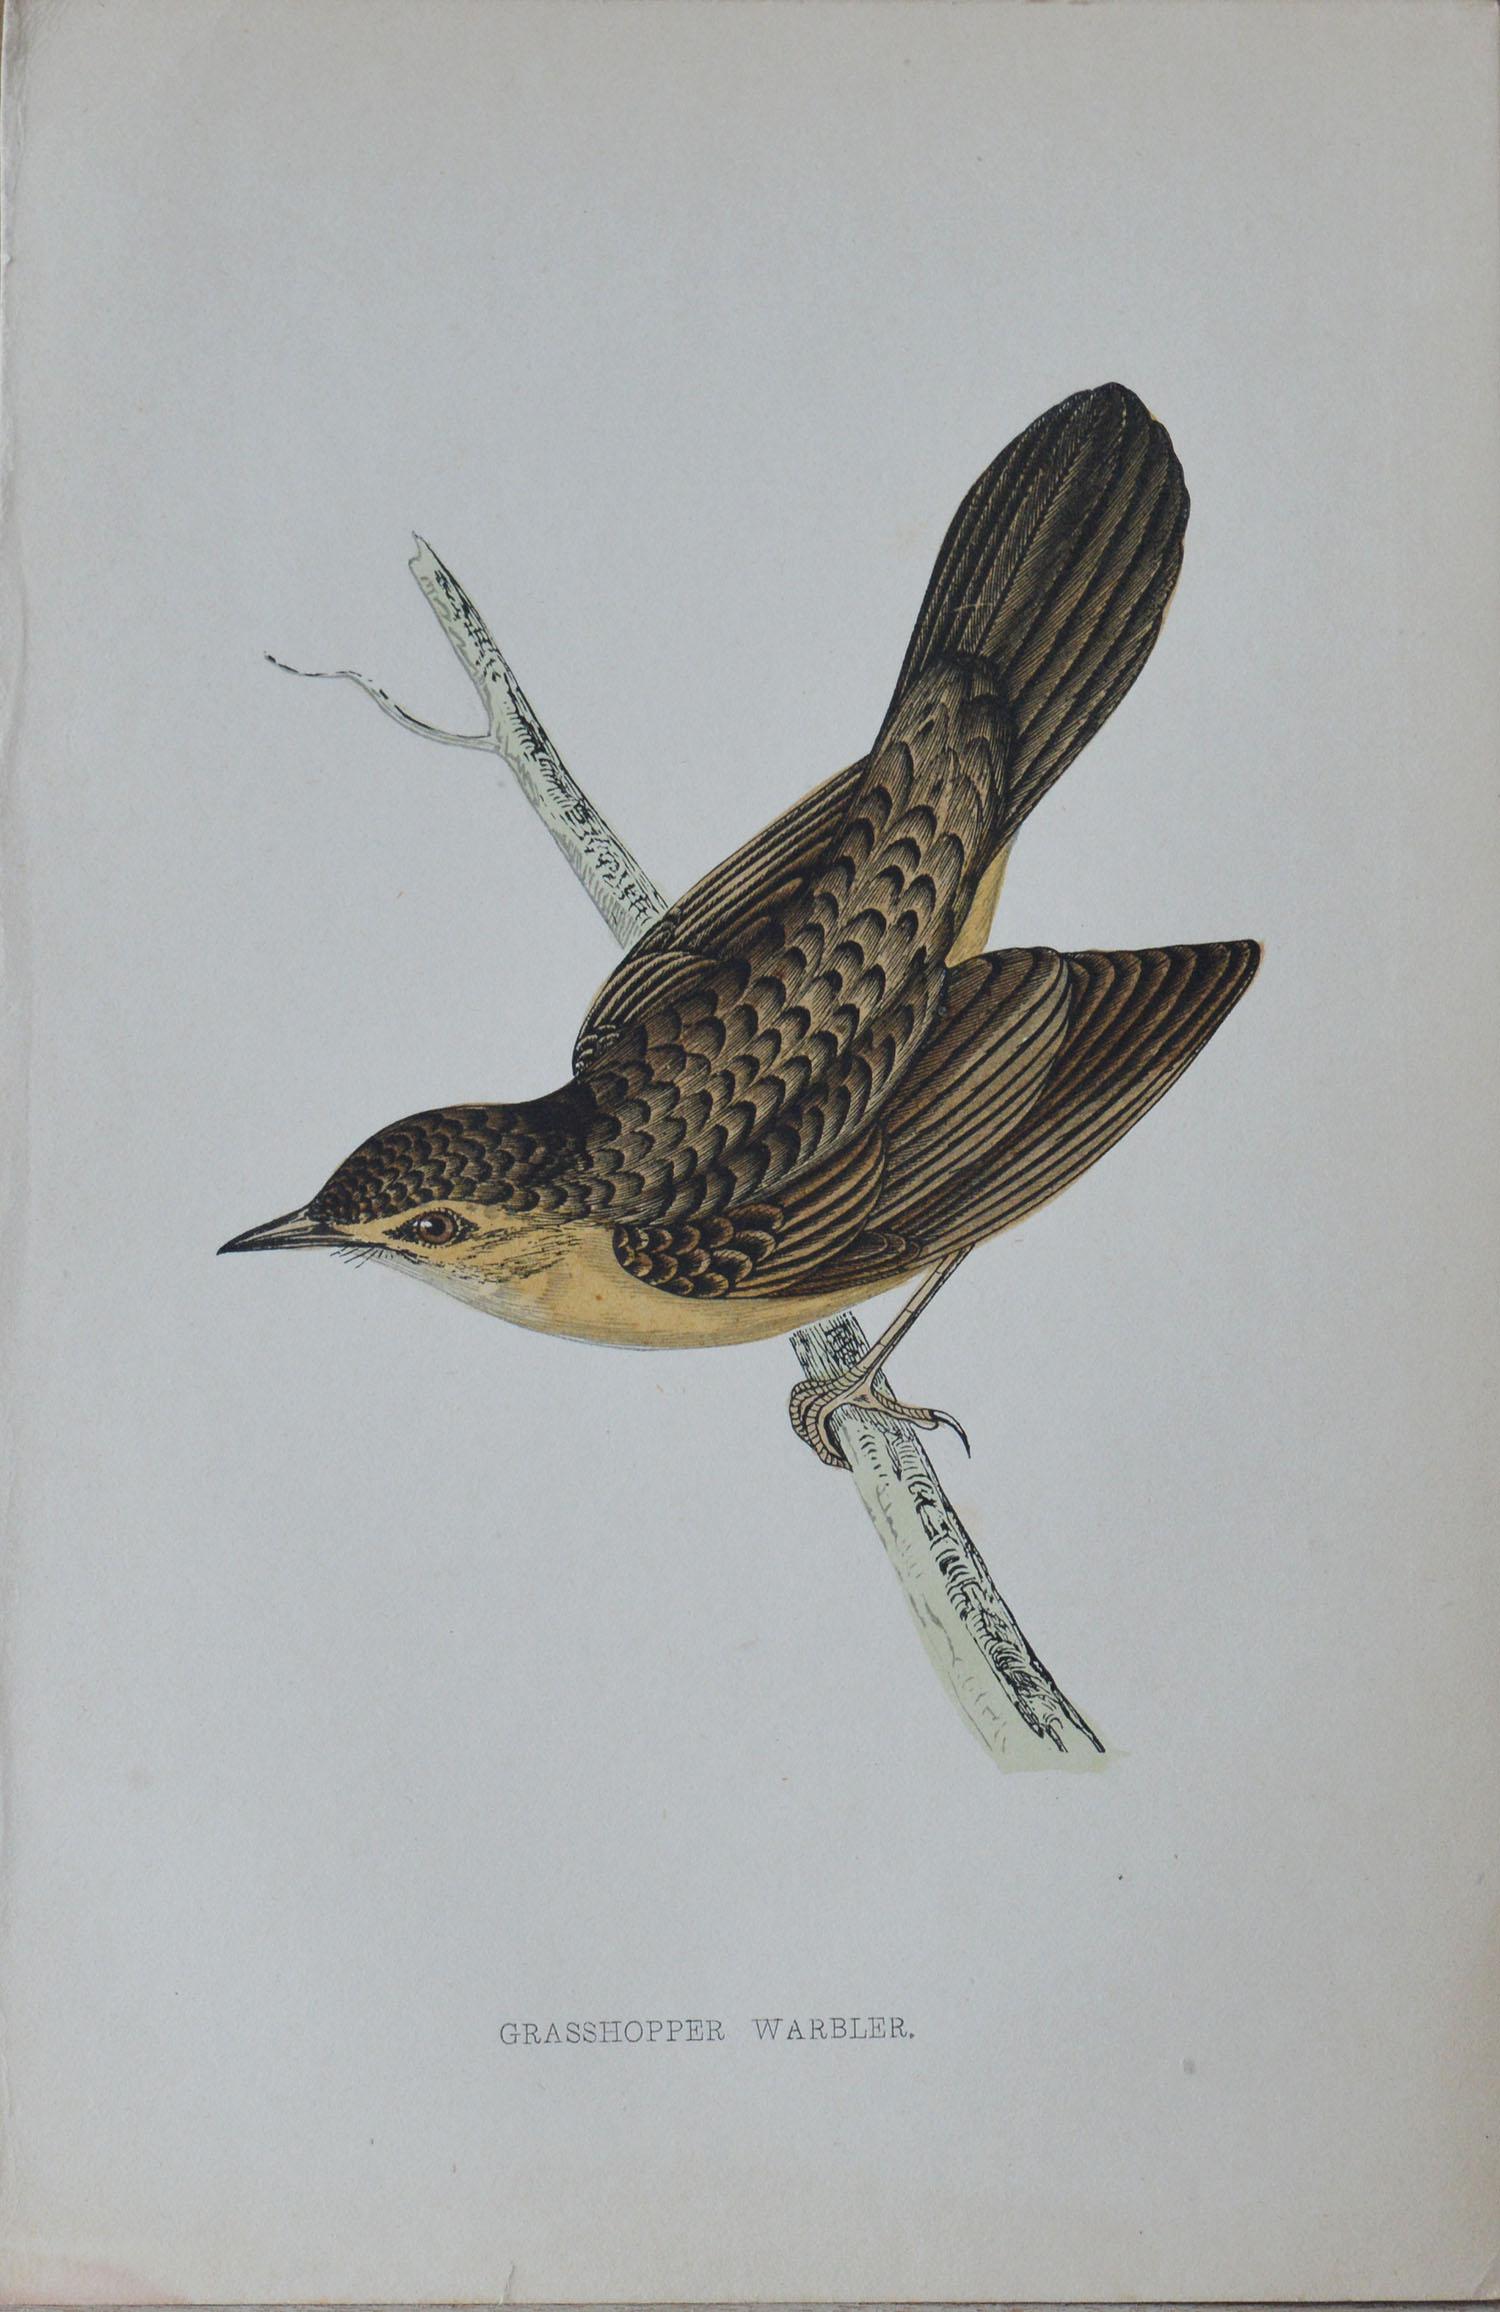 Folk Art Original Antique Bird Print, the Grasshopper Warbler, circa 1850